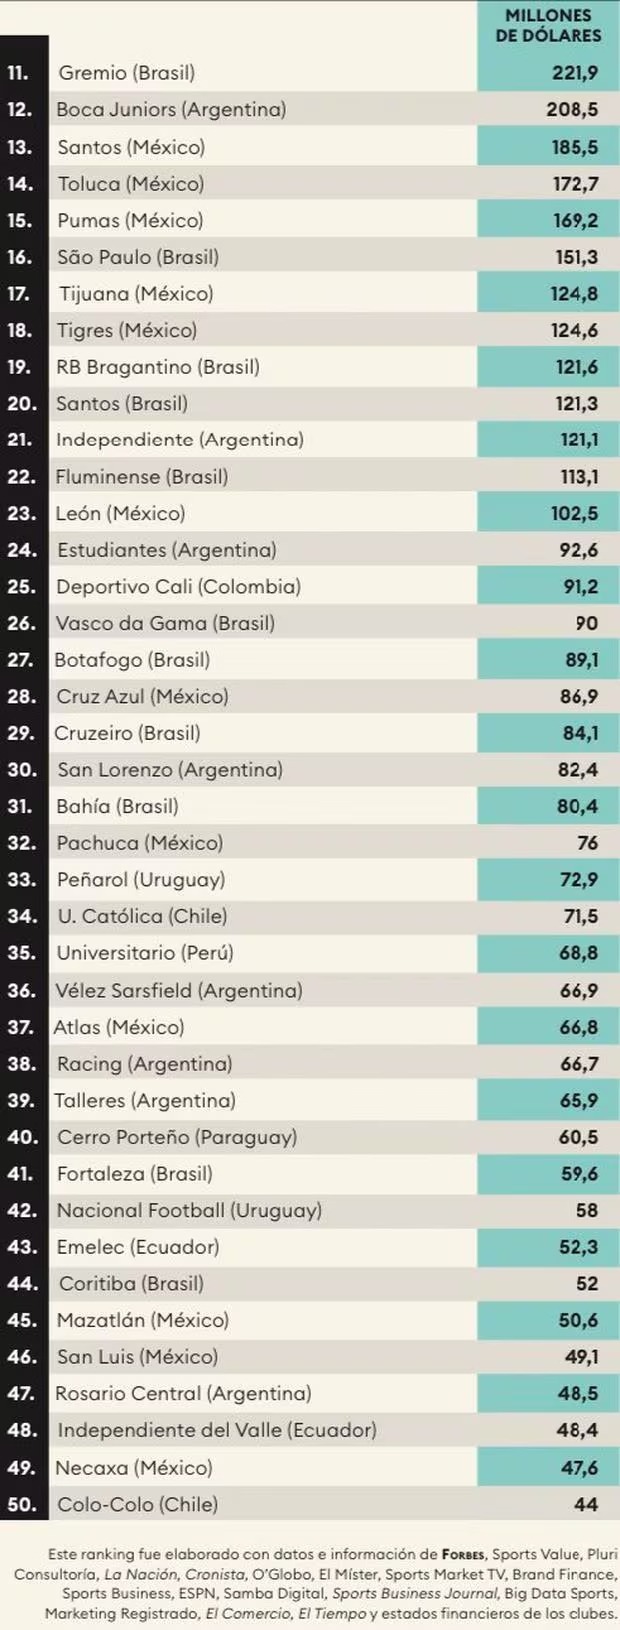 Universitario ocupa el puesto 35. | Fuente: Forbes